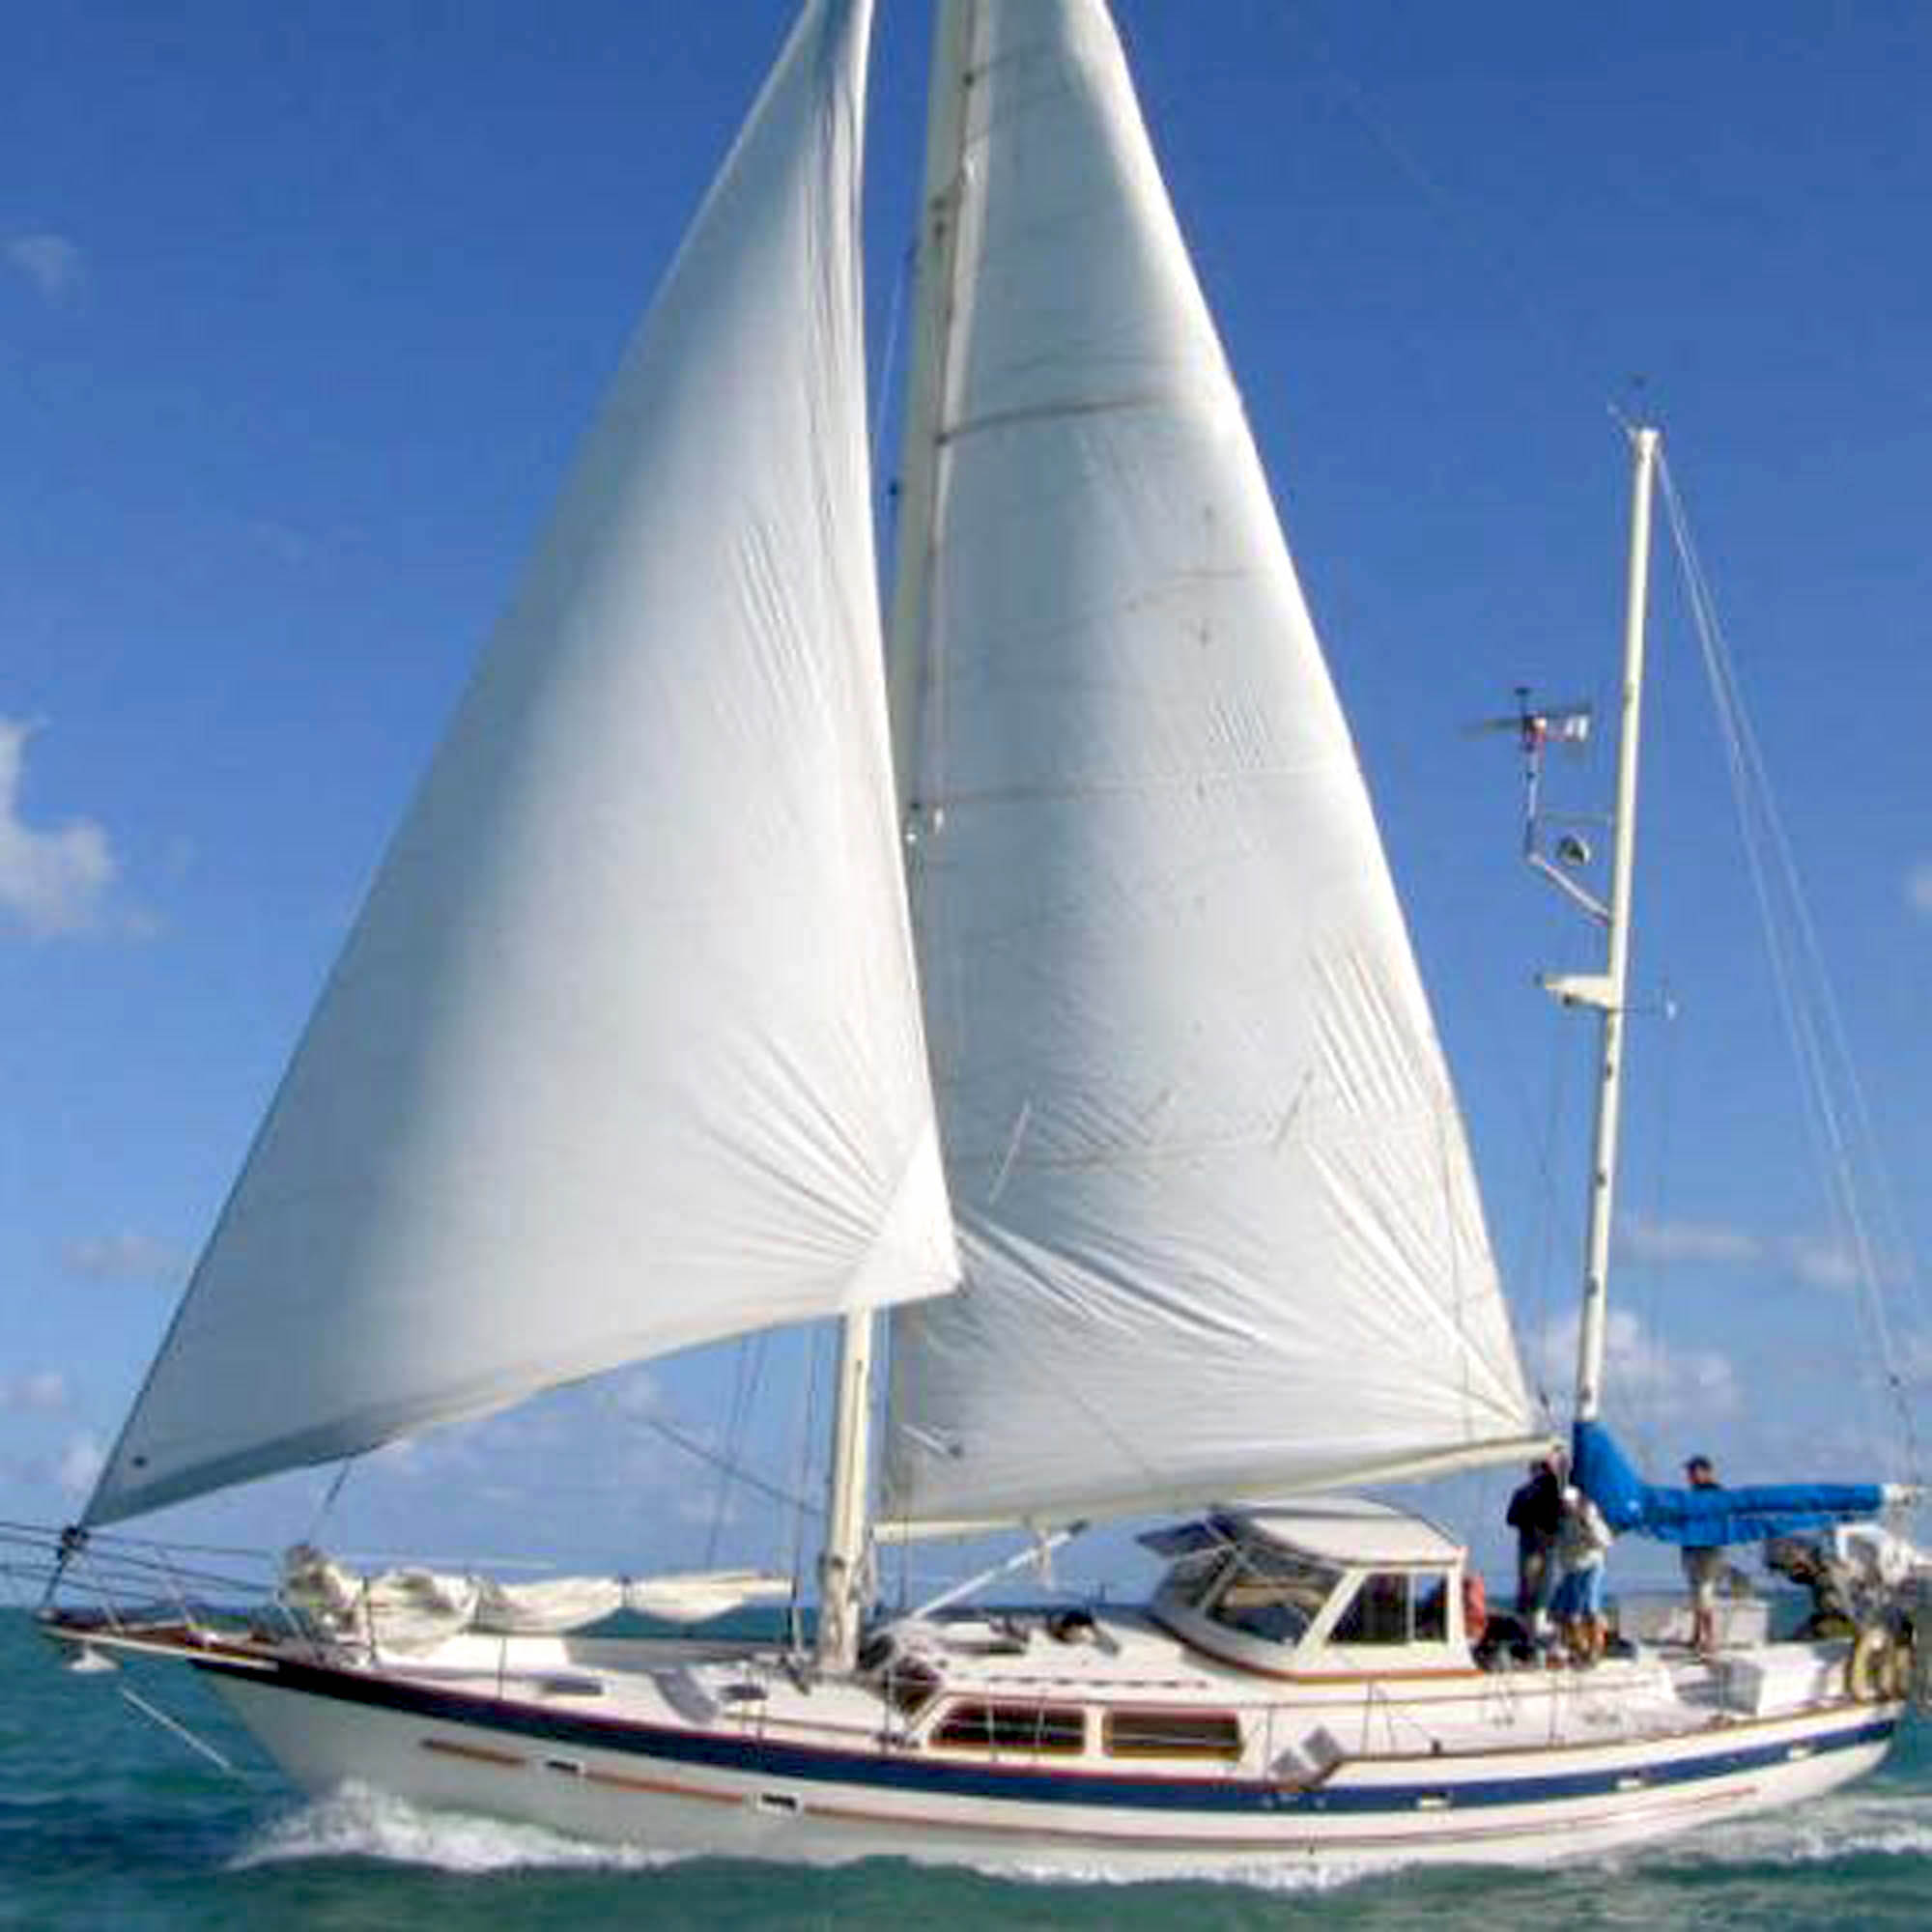 52 foot sailing yacht